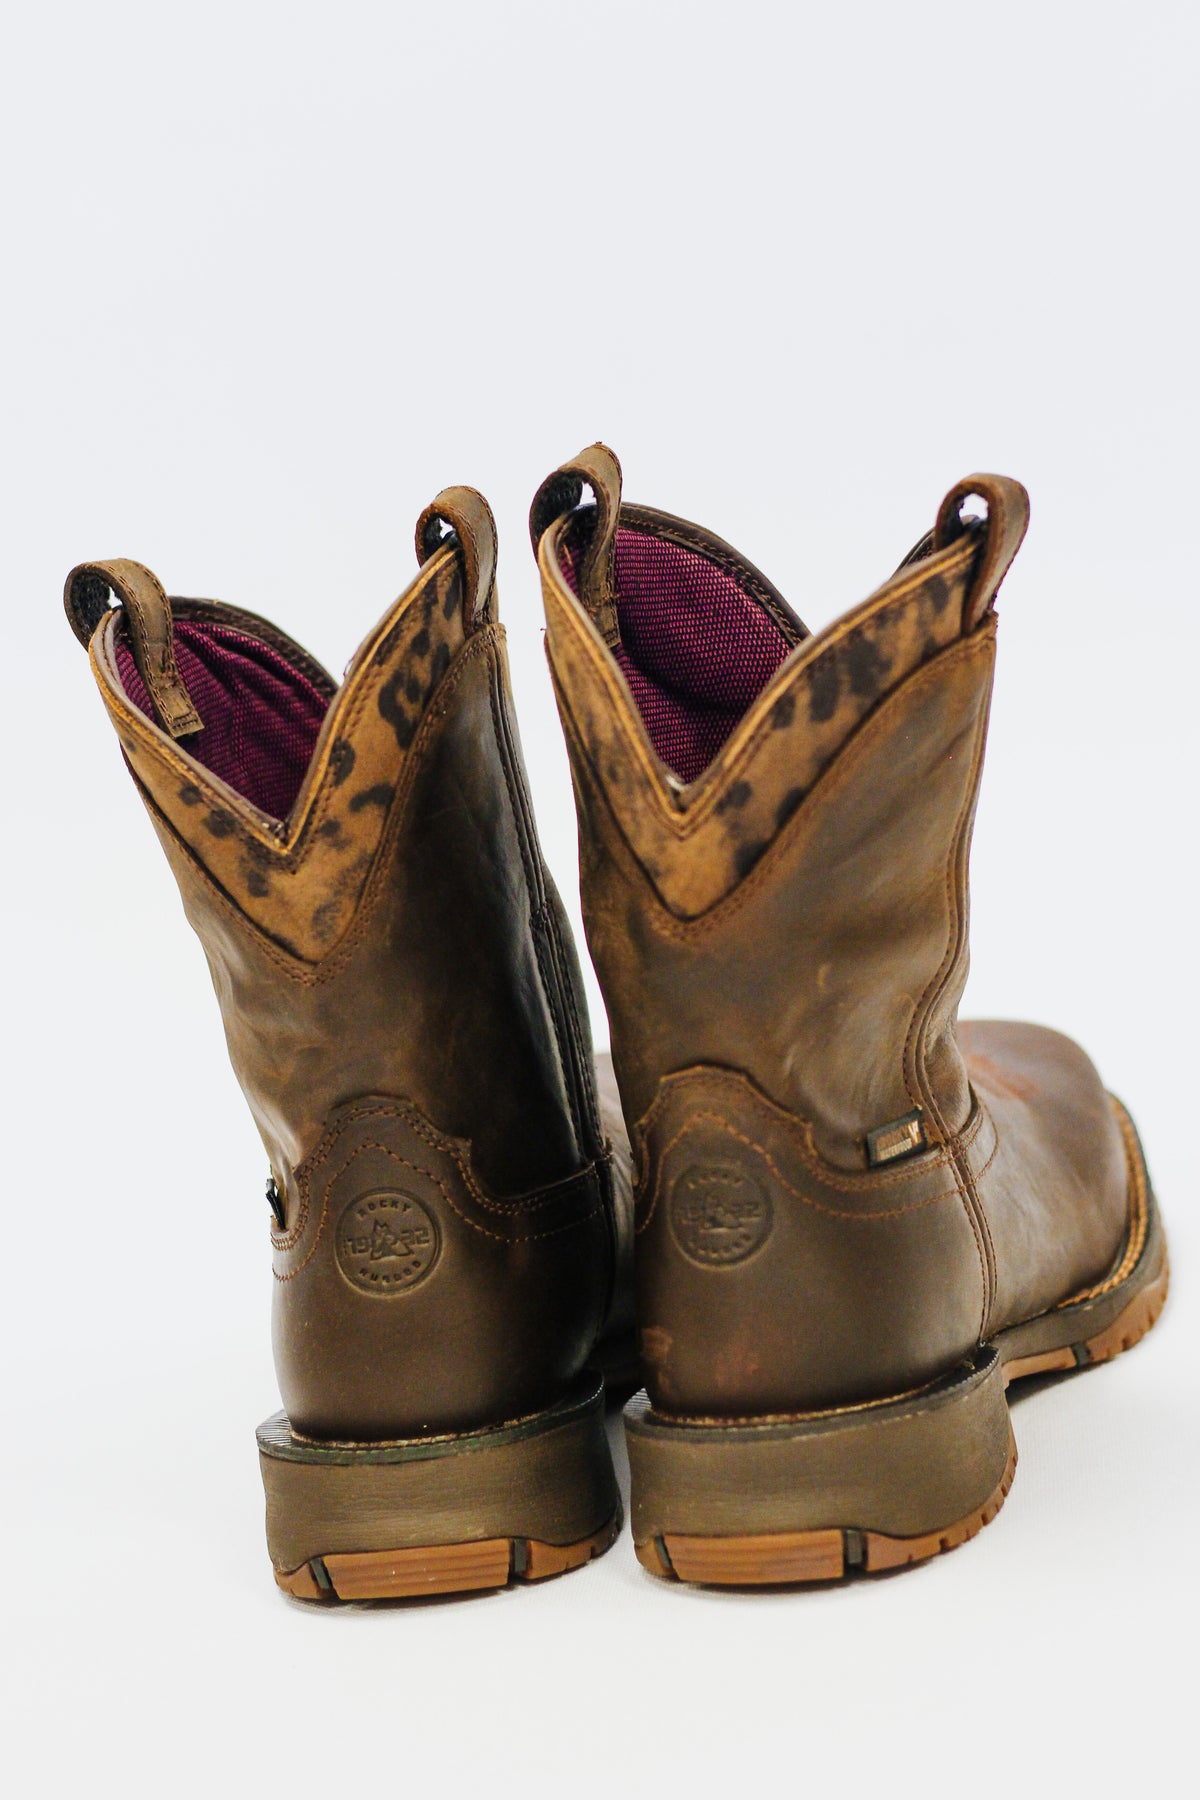 Rocky Rosemary Women's 8” Waterproof Composite Toe Western Boot